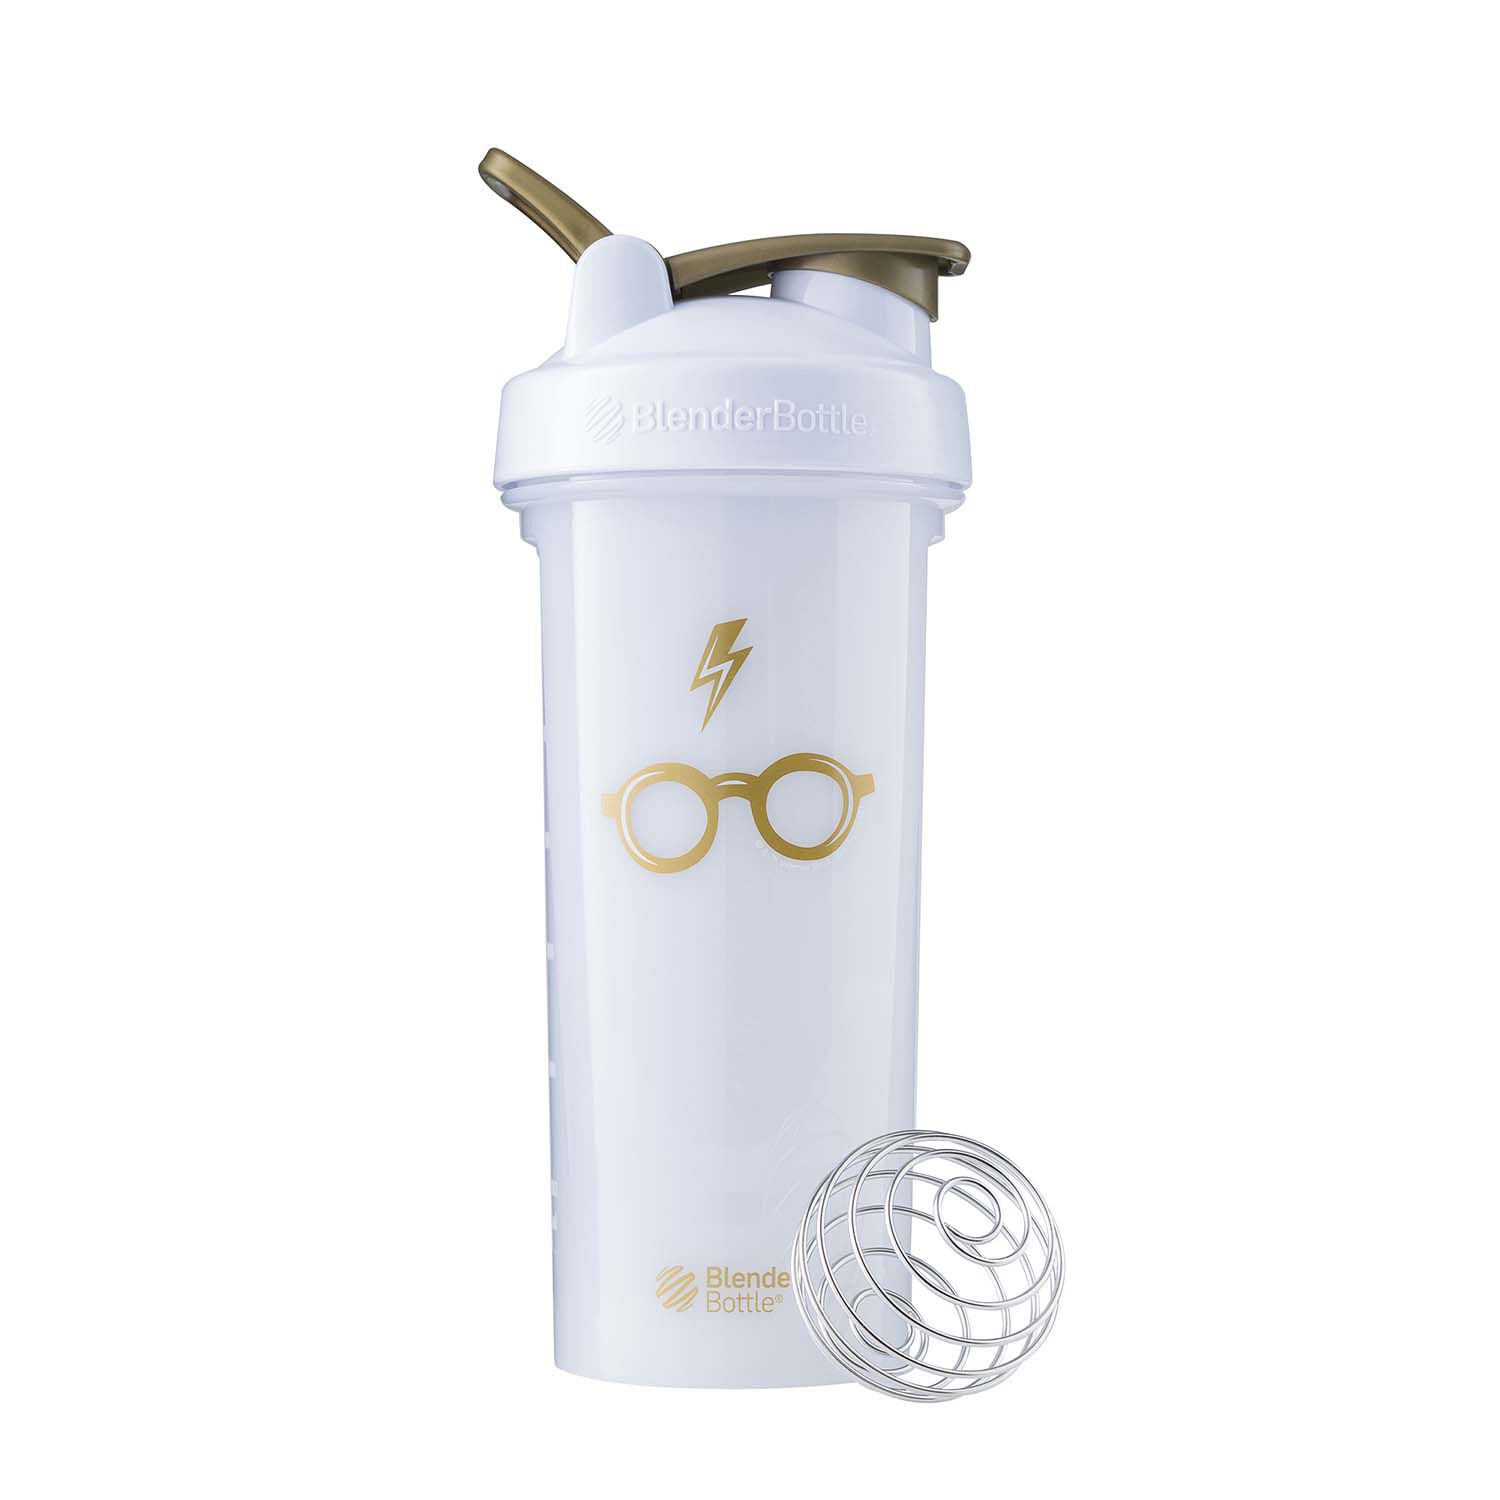 Harry Potter BlenderBottle Shaker Bottle 3-Pack 28oz - Seeker in Training -  BlenderBall Mixer Blender Ball - Blend Protein Powder Sport Drinks Shakes  Smoothies & More - Gift for Kids & Adults